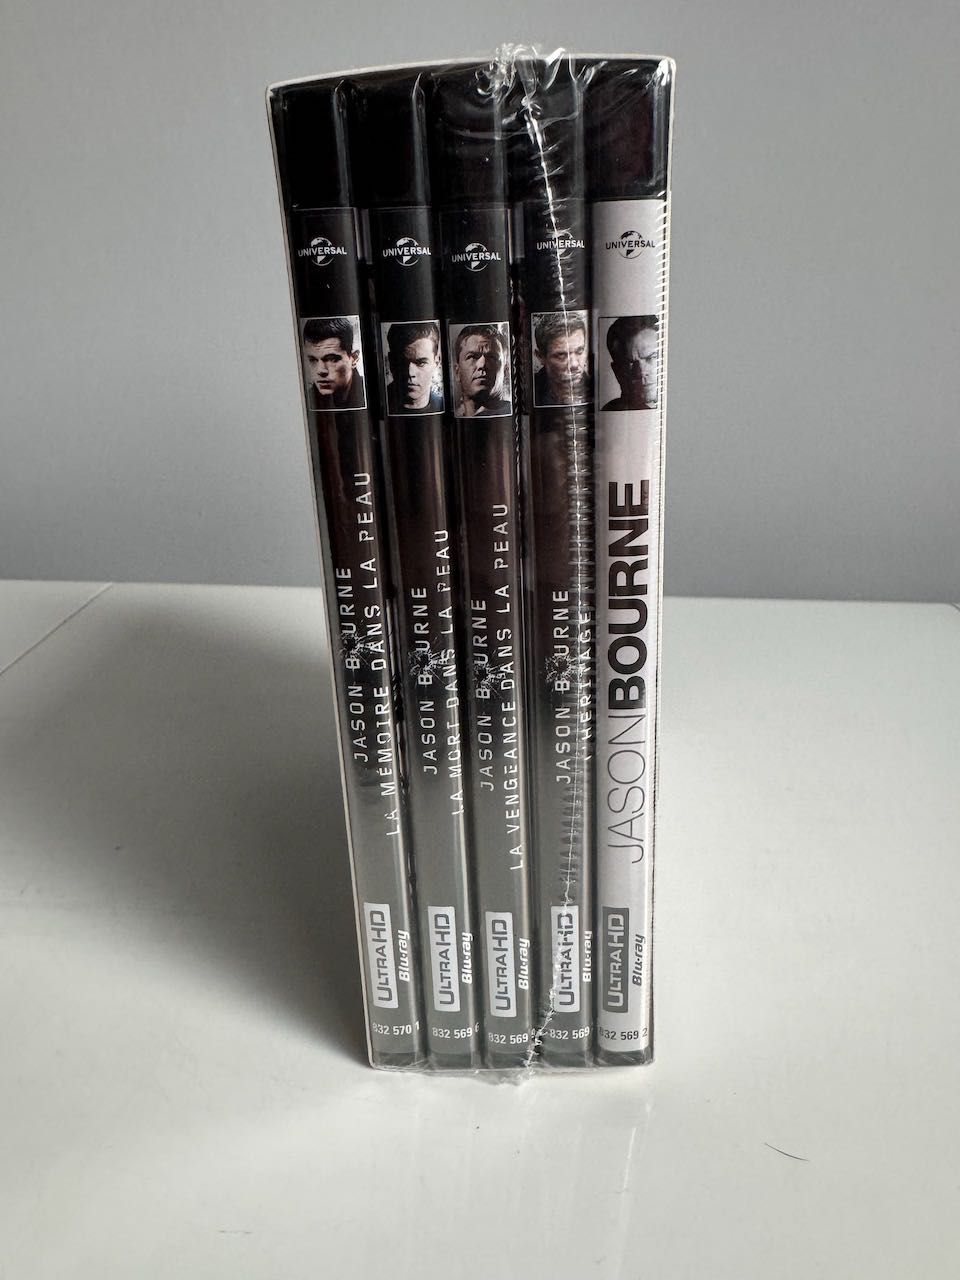 Kolekcja Bourne 5 filmów, 4K UltraHD, w oryginalnej folii [PL/ENG/FR]